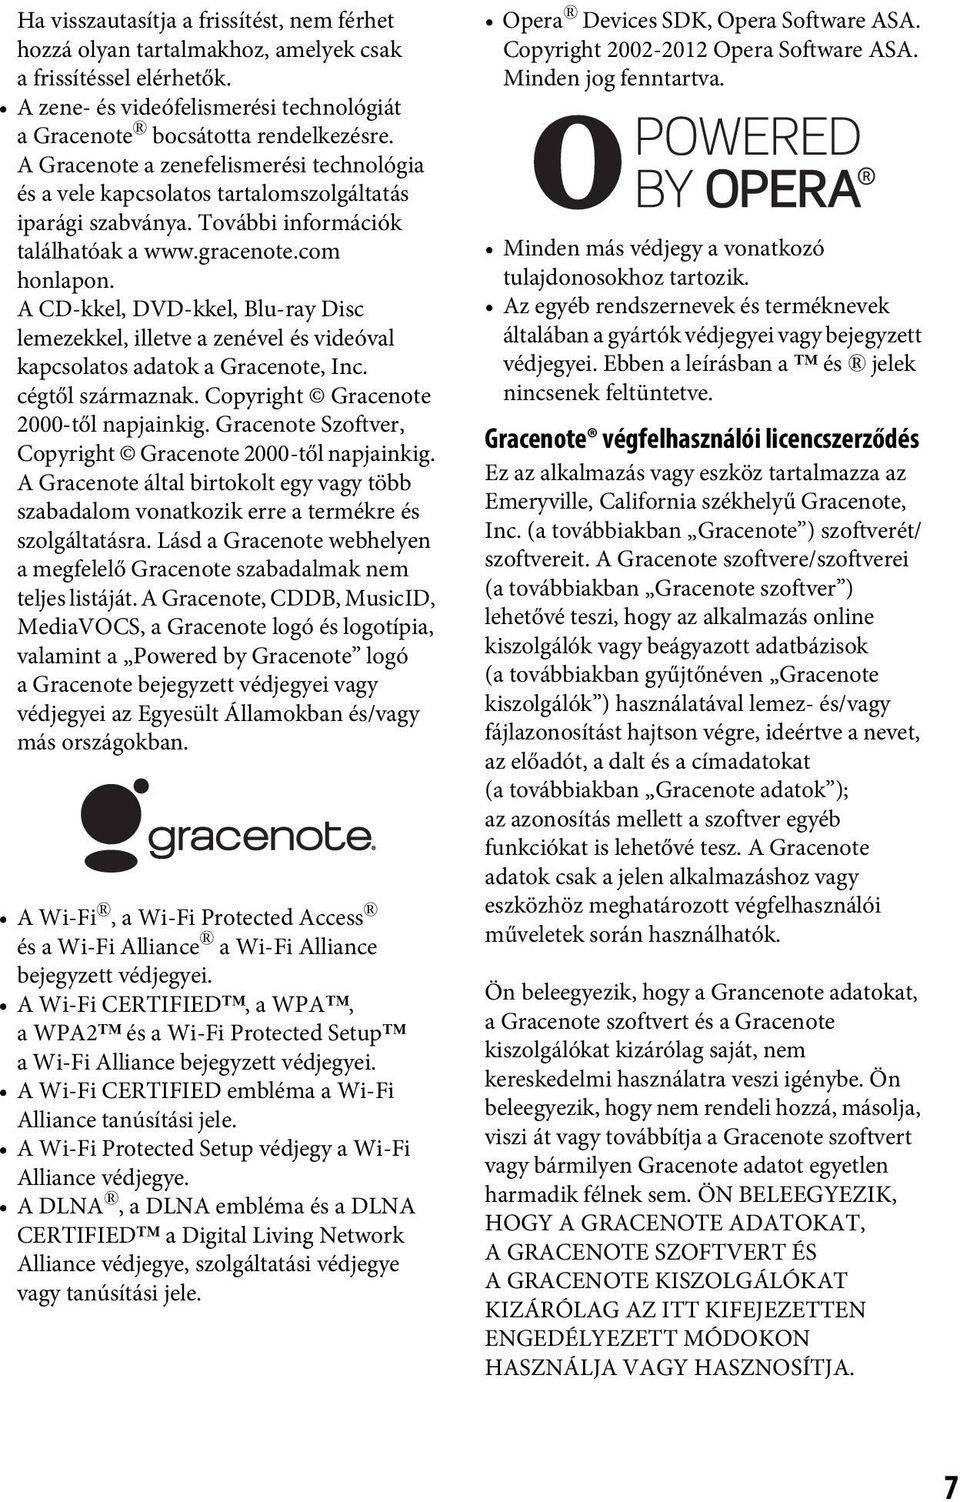 A CD-kkel, DVD-kkel, Blu-ray Disc lemezekkel, illetve a zenével és videóval kapcsolatos adatok a Gracenote, Inc. cégtől származnak. Copyright Gracenote 2000-től napjainkig.